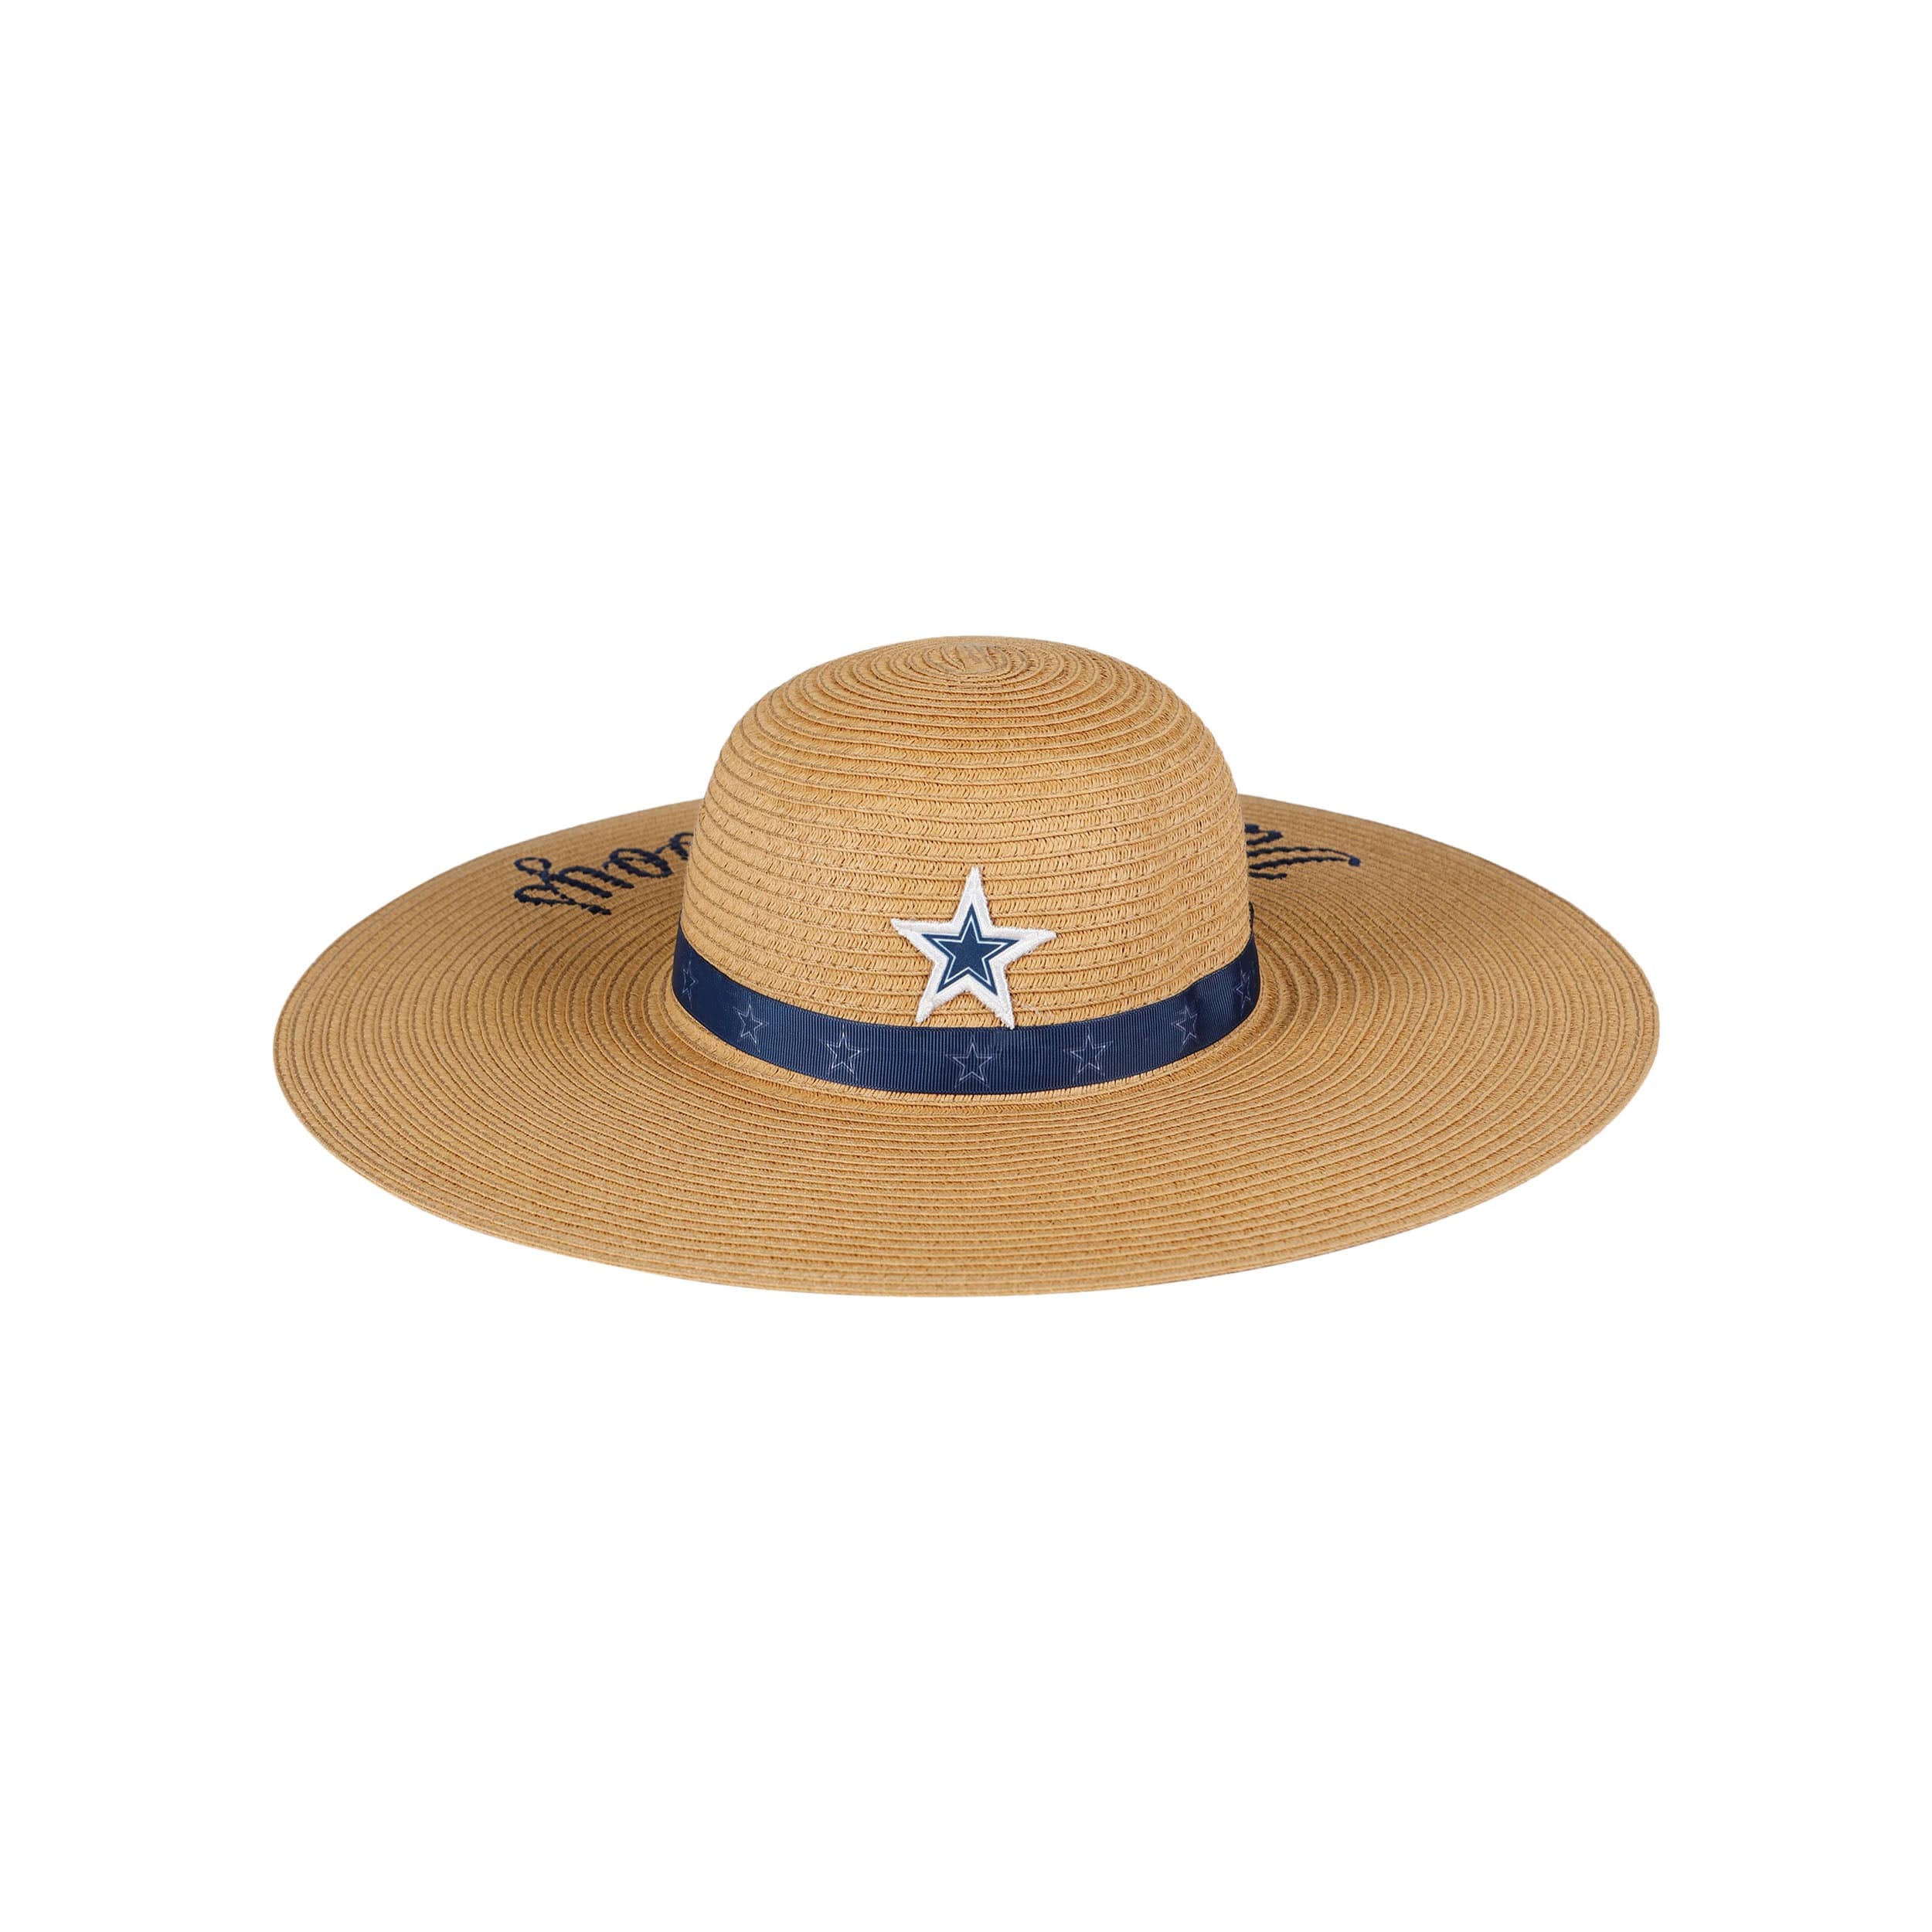 FOCO Dallas Cowboys NFL Womens Wordmark Beach Straw Hat